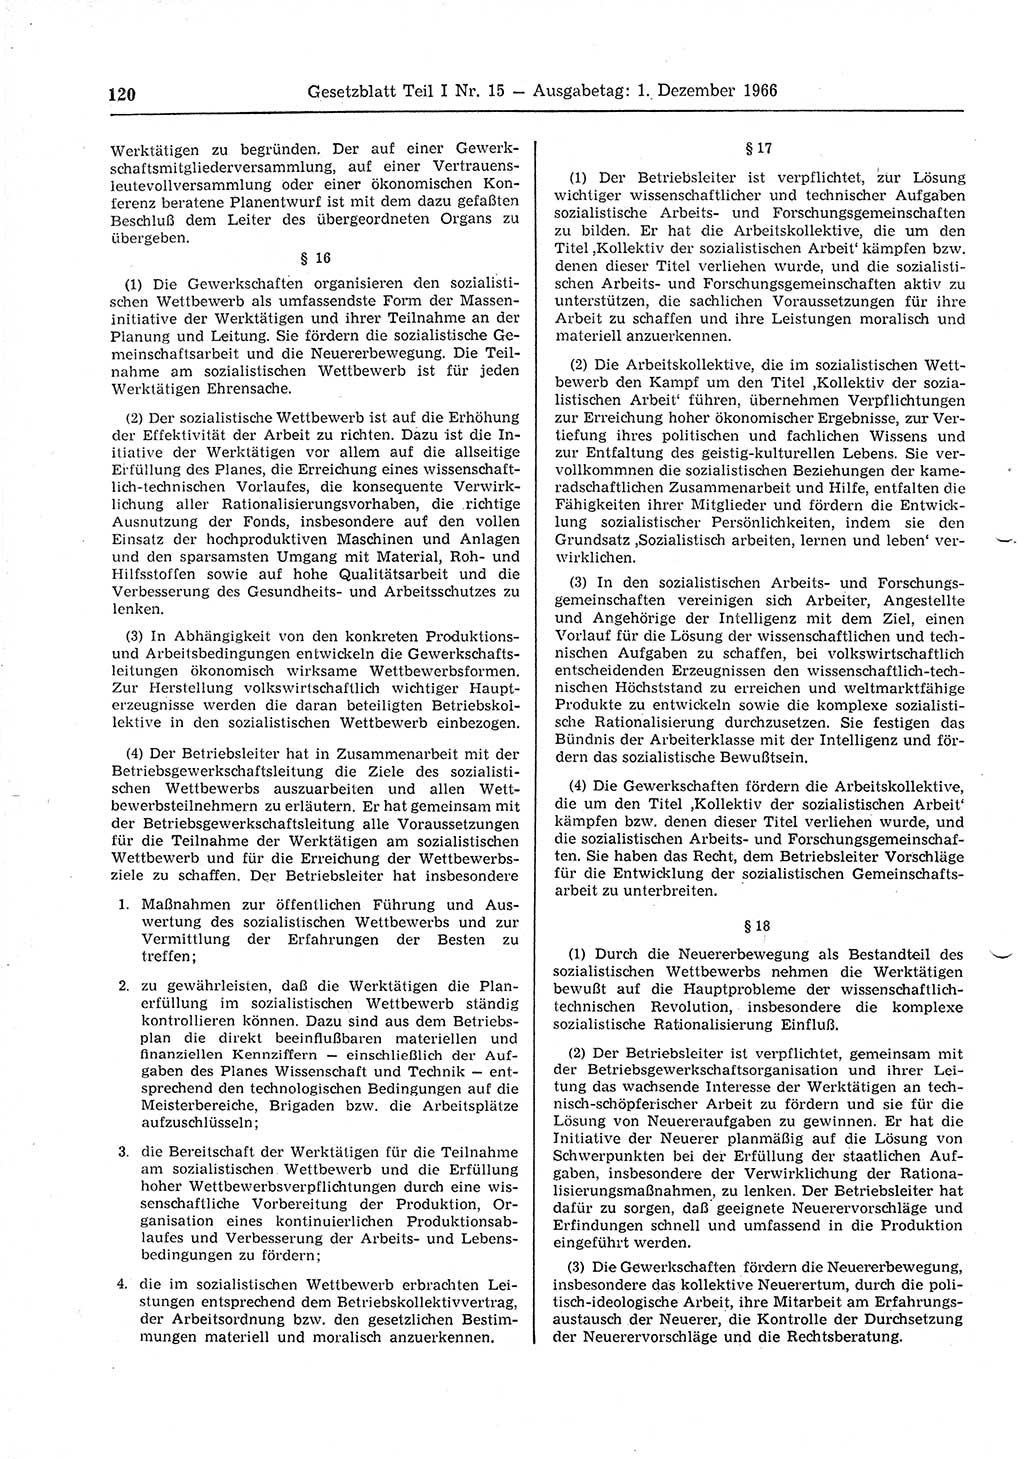 Gesetzblatt (GBl.) der Deutschen Demokratischen Republik (DDR) Teil Ⅰ 1966, Seite 120 (GBl. DDR Ⅰ 1966, S. 120)